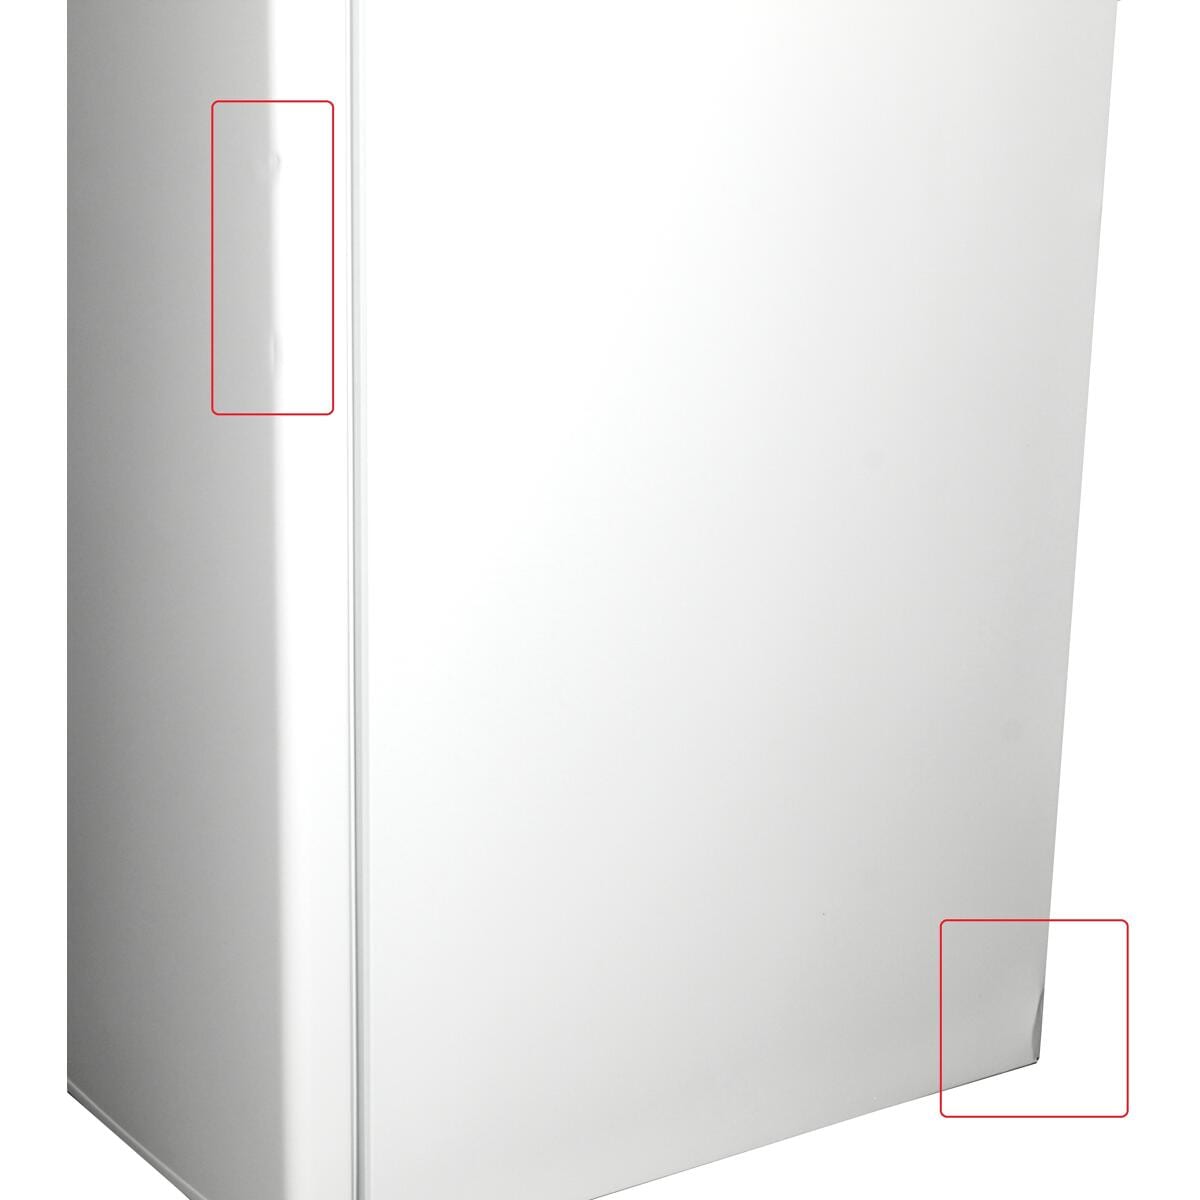 Exquisit KS16-4-E-040E Stand-Kühlschrank 55cm breit weiß Gefrierfach 109 Liter LED-Beleuchtung mit